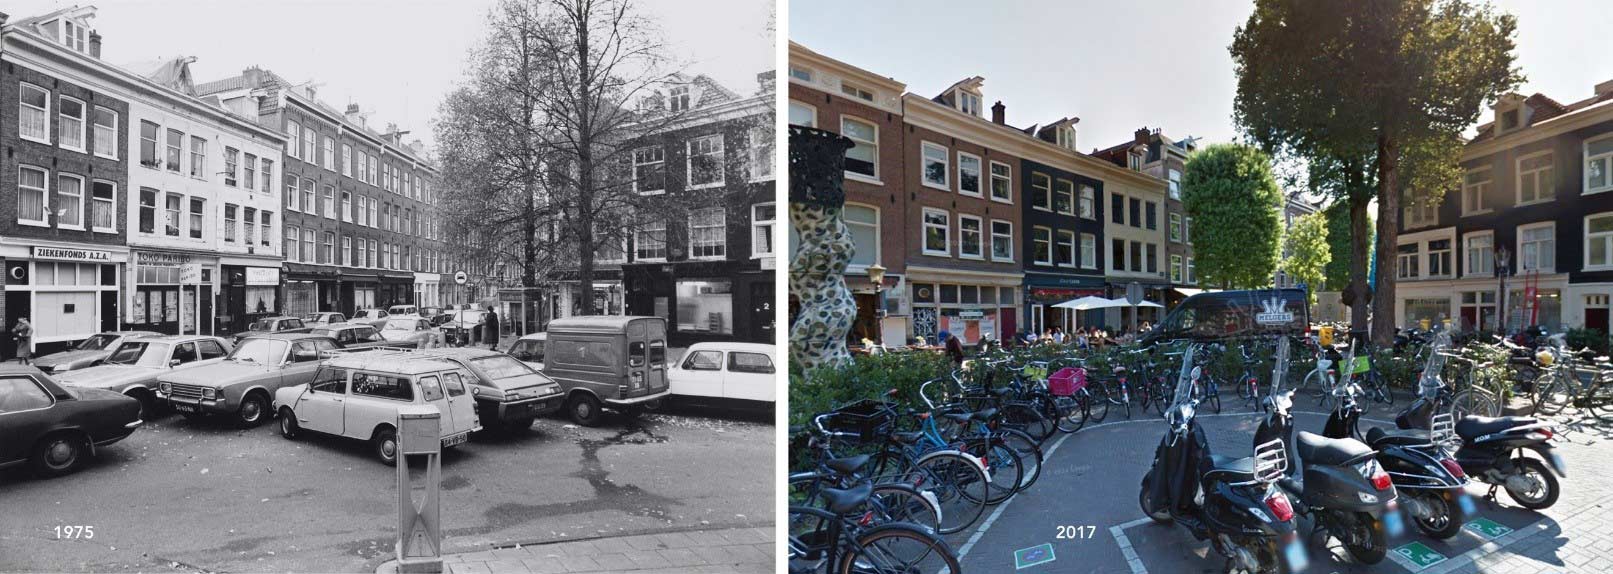 Una strada di Amsterdam a confronto, prima nel 1975 poi nel 2017